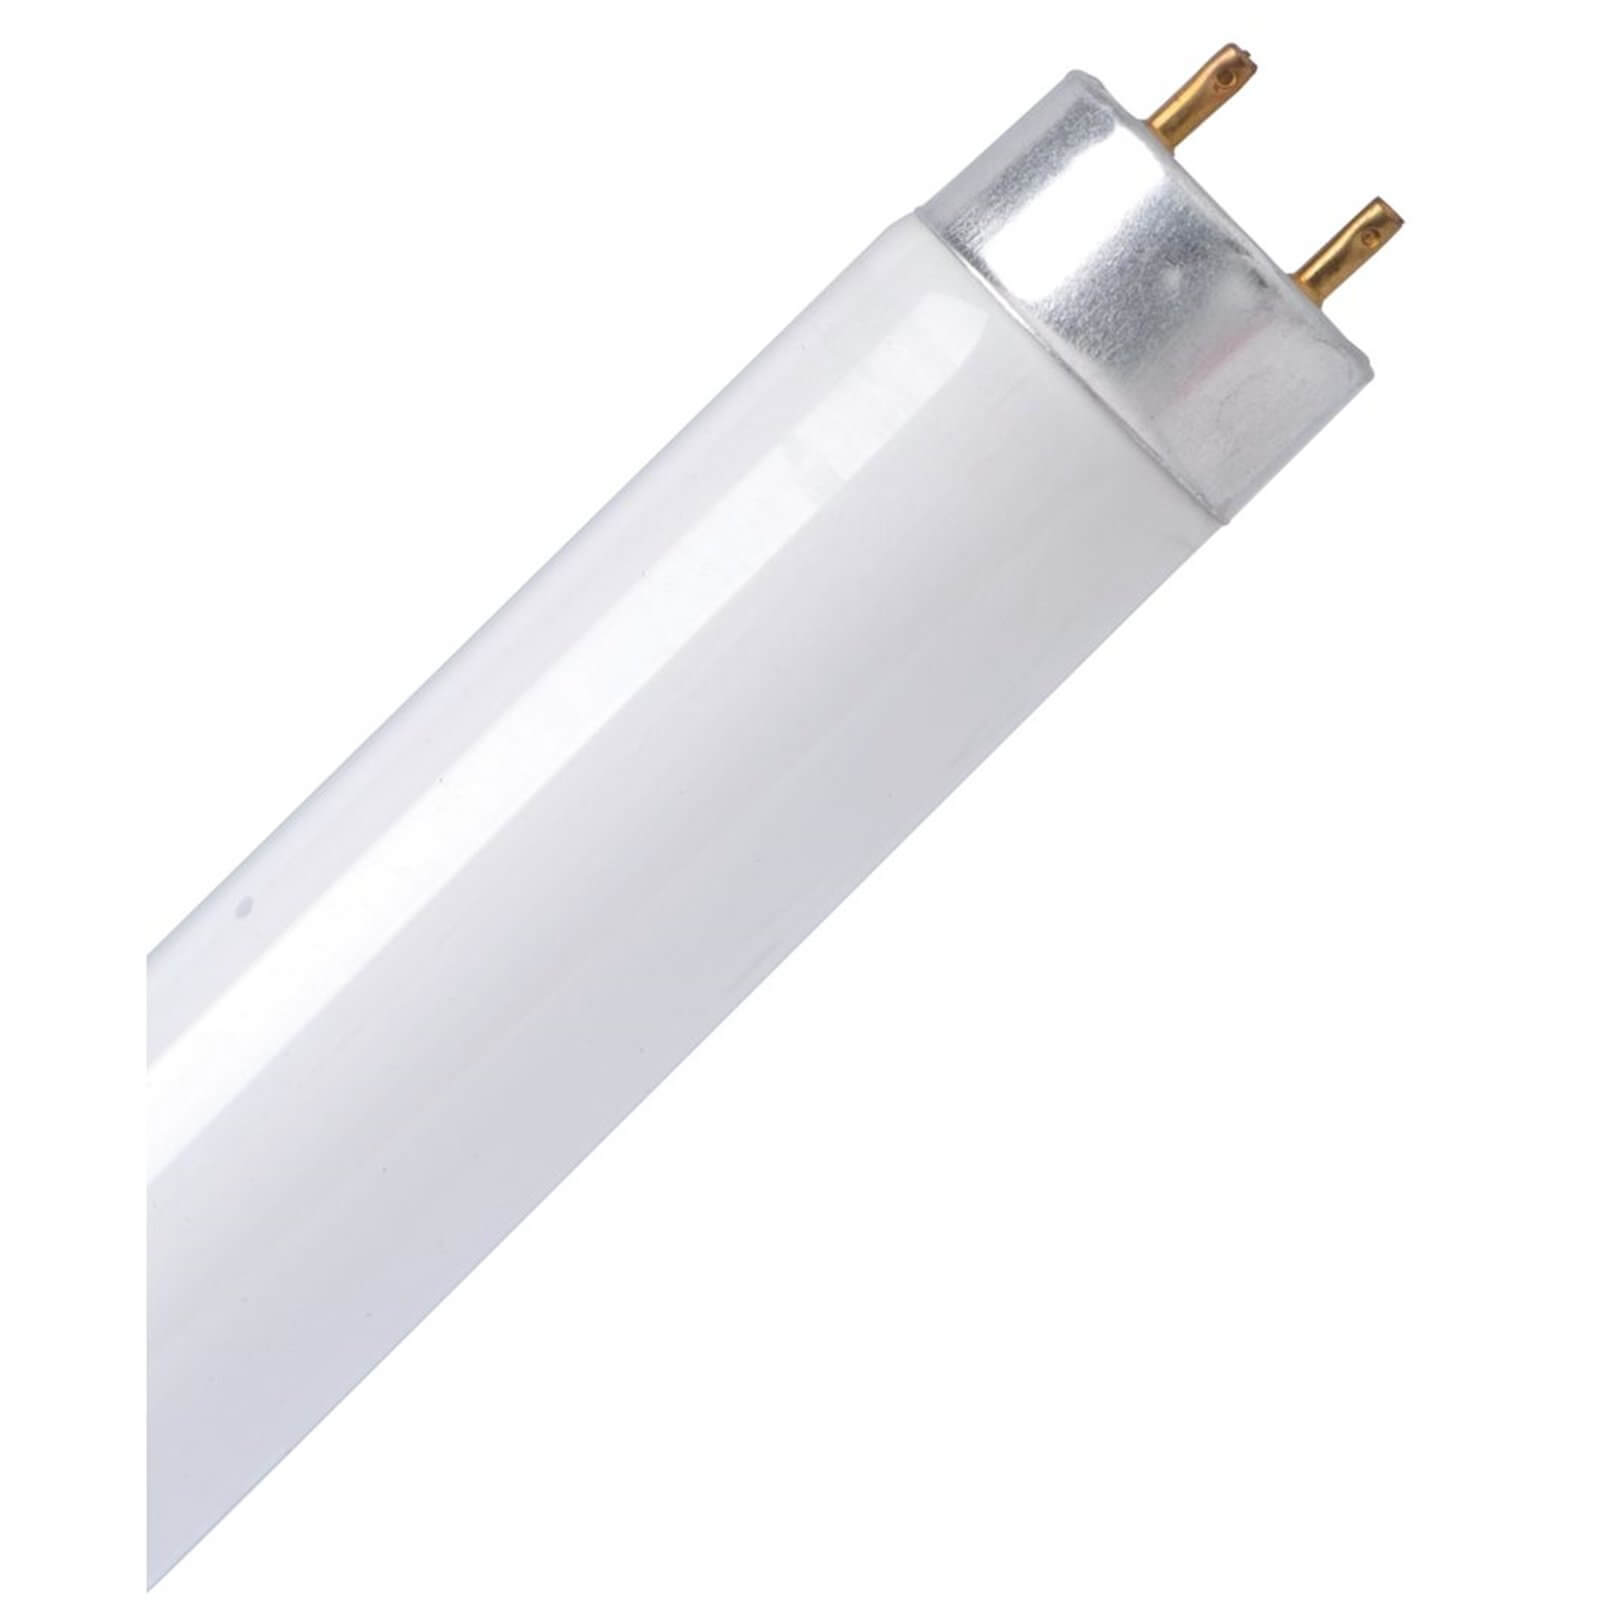 Energy Saver (CFL) Tube Cool White 0.3 8W Light Bulb